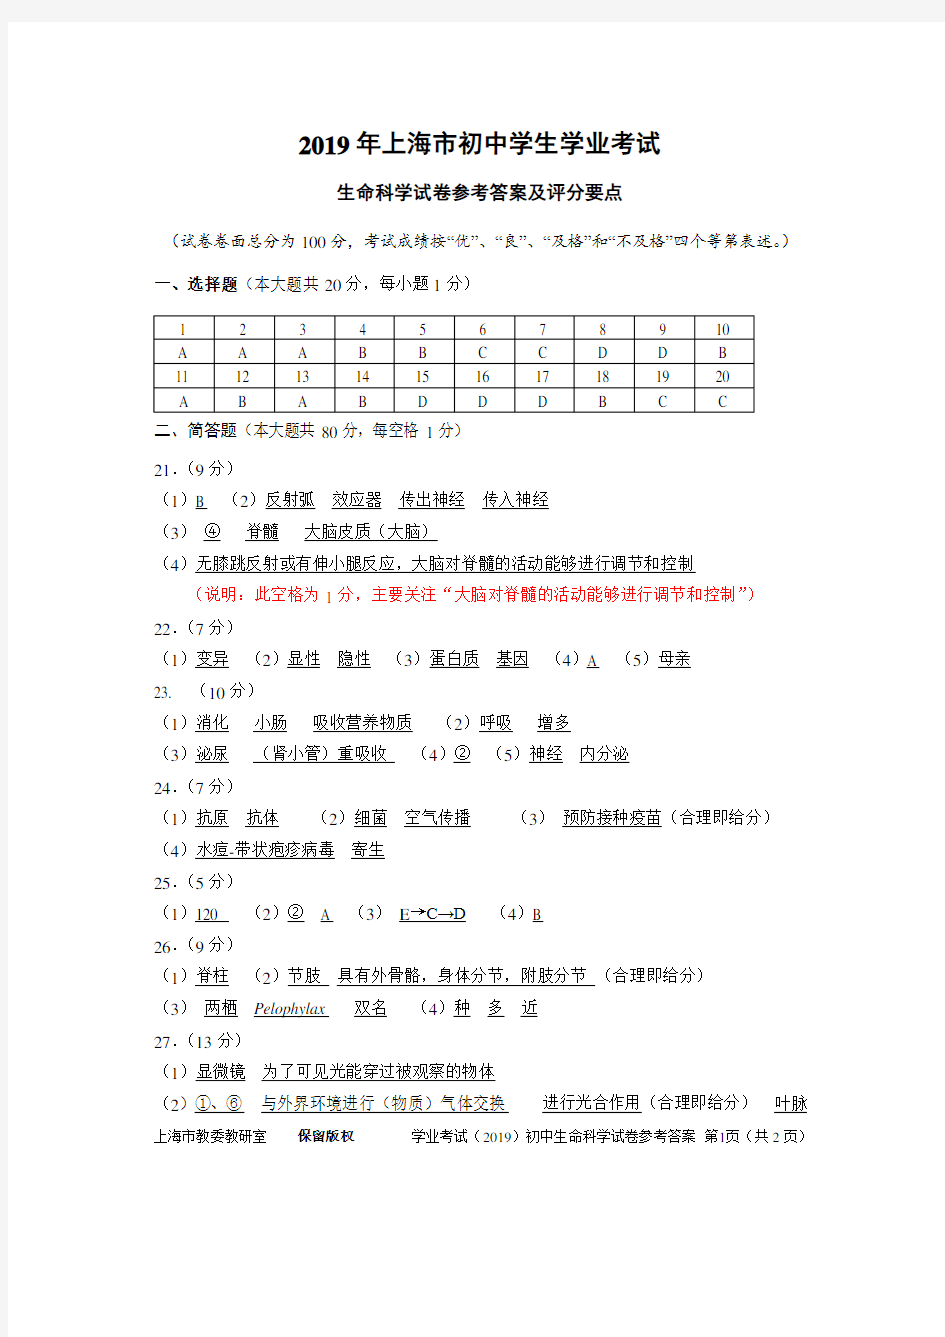 2019年上海市初中学生学业考试生命科学参考答案及评分标准